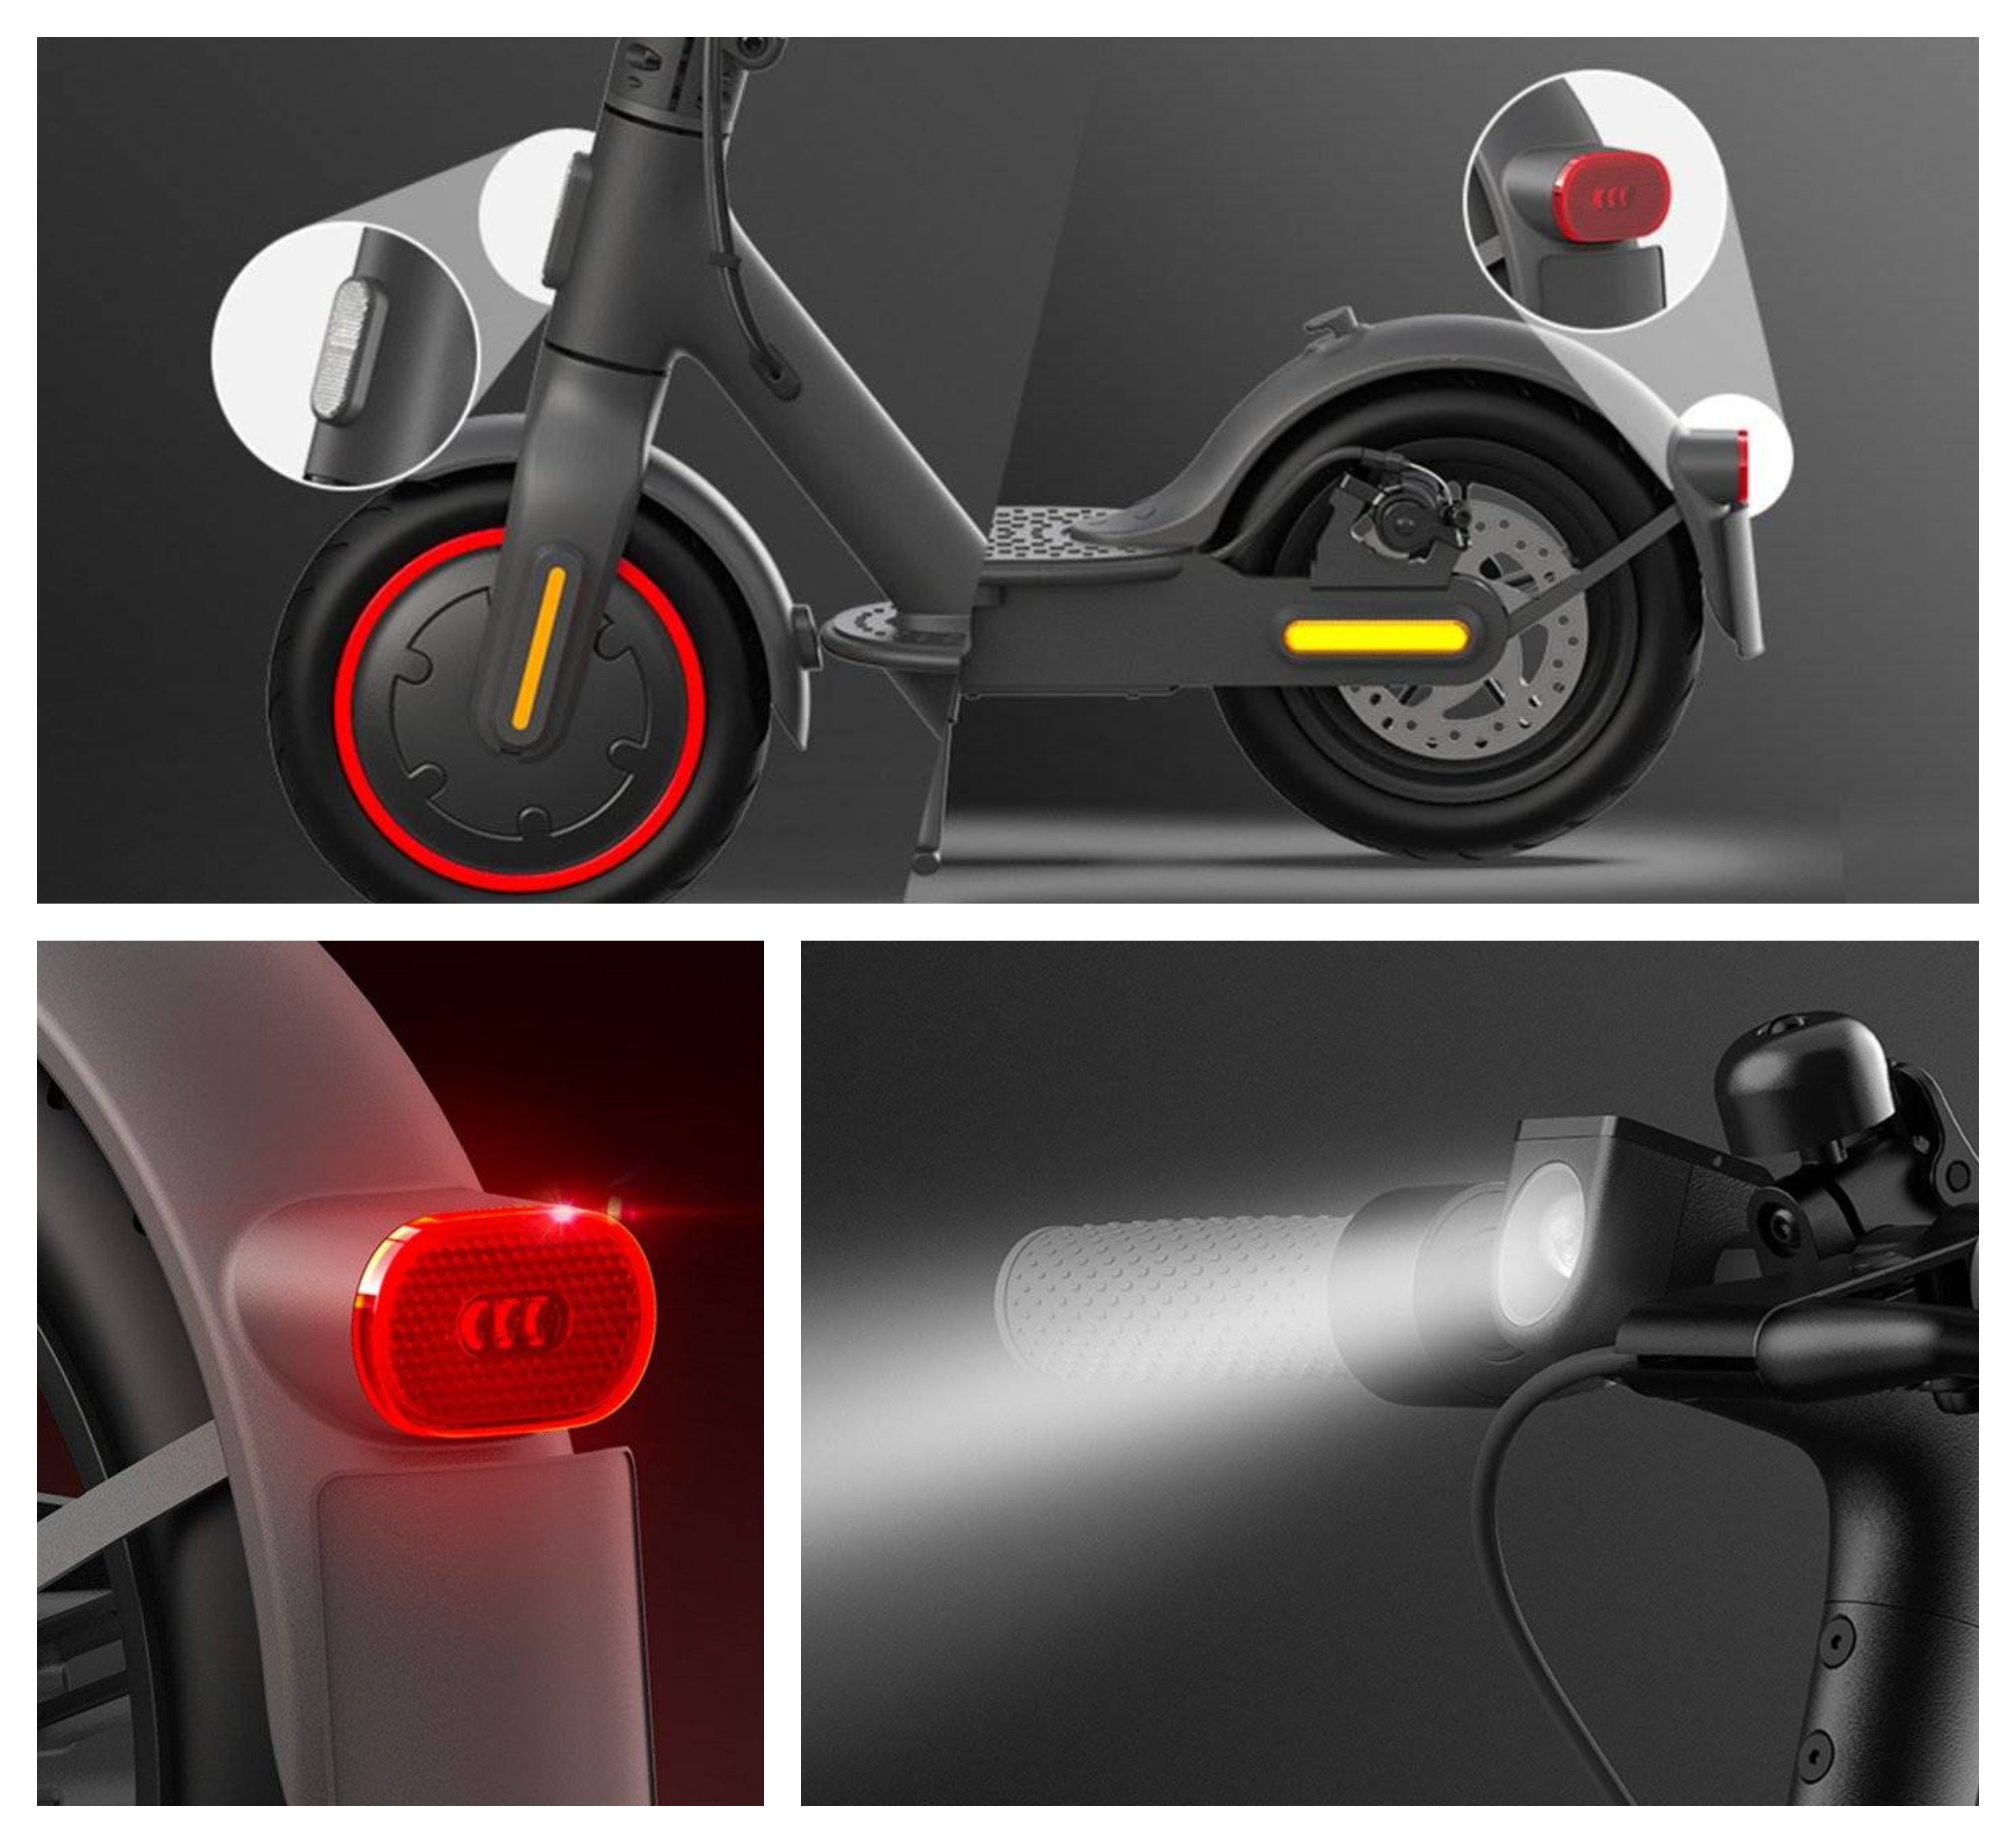 Elektrokoloběžka Xiaomi Mi Electric Scooter Pro 2 má přední a zadní světla i boční reflexní prvky, které zvyšují bezpečnost jízdy na maximum.